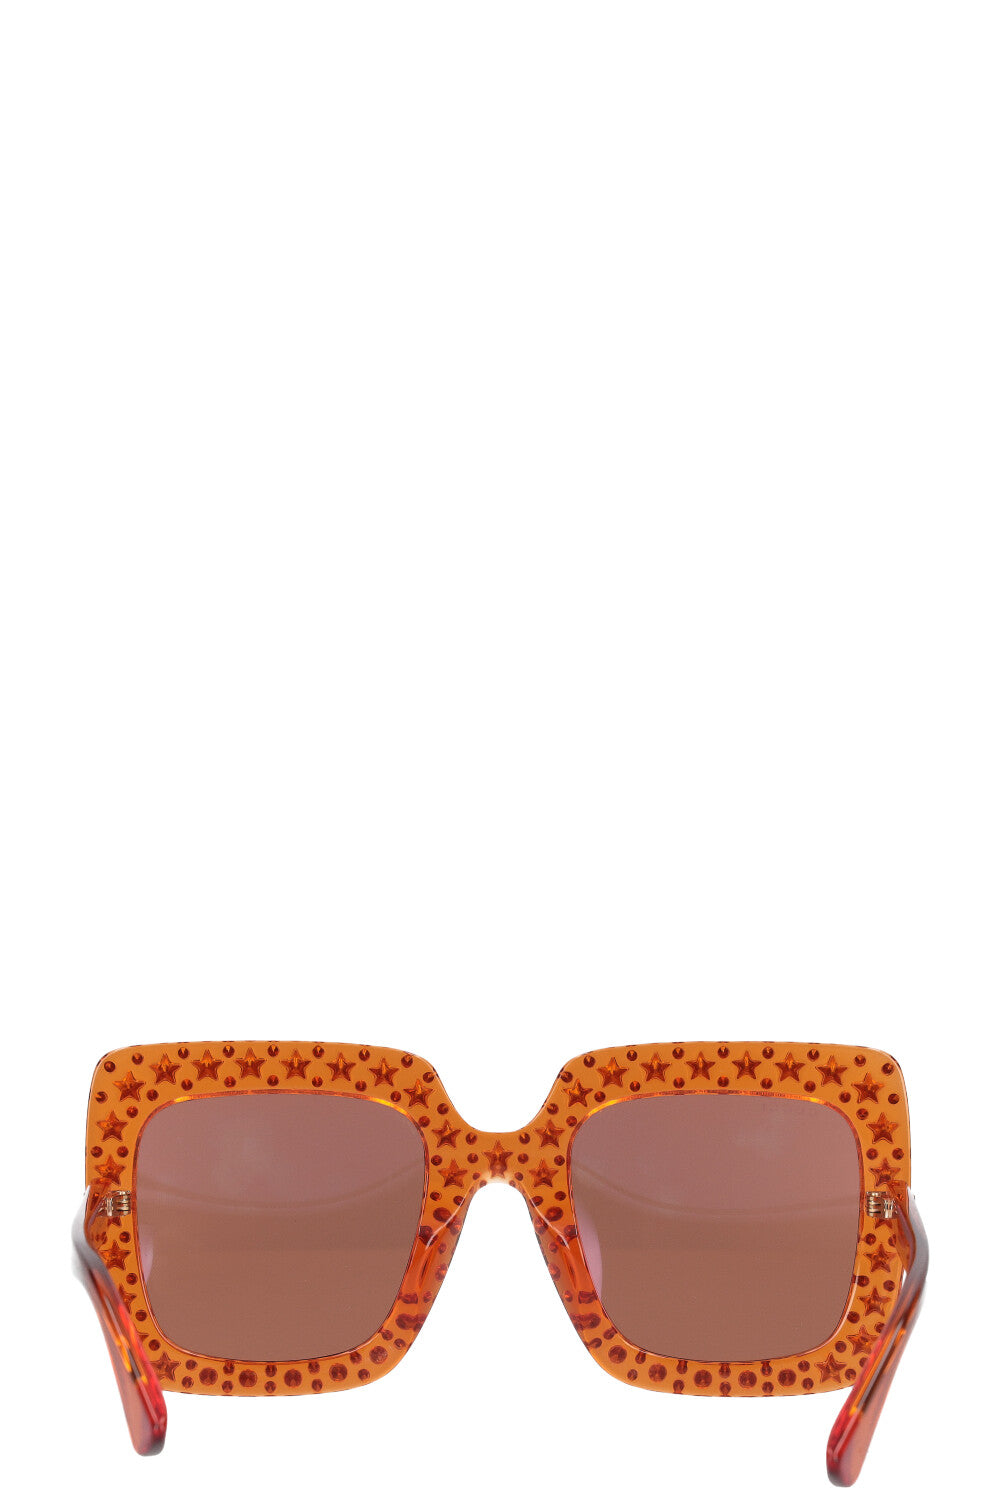 GUCCI Sunglasses GG0148S Orange